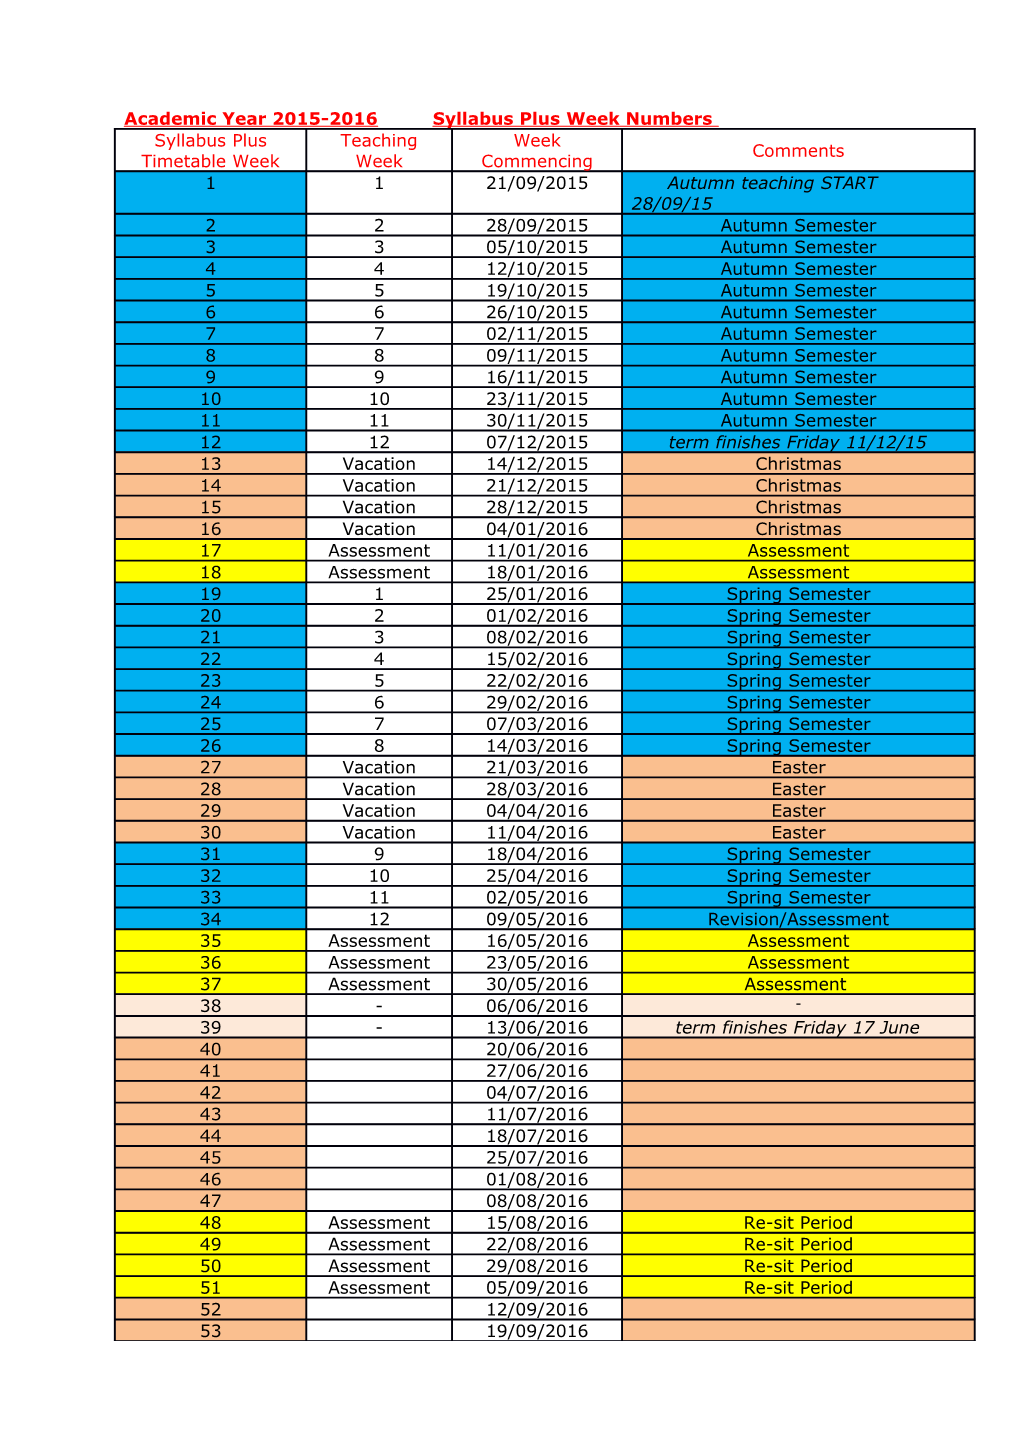 Syllabus-Plus-Timetable-Weeks-15-16